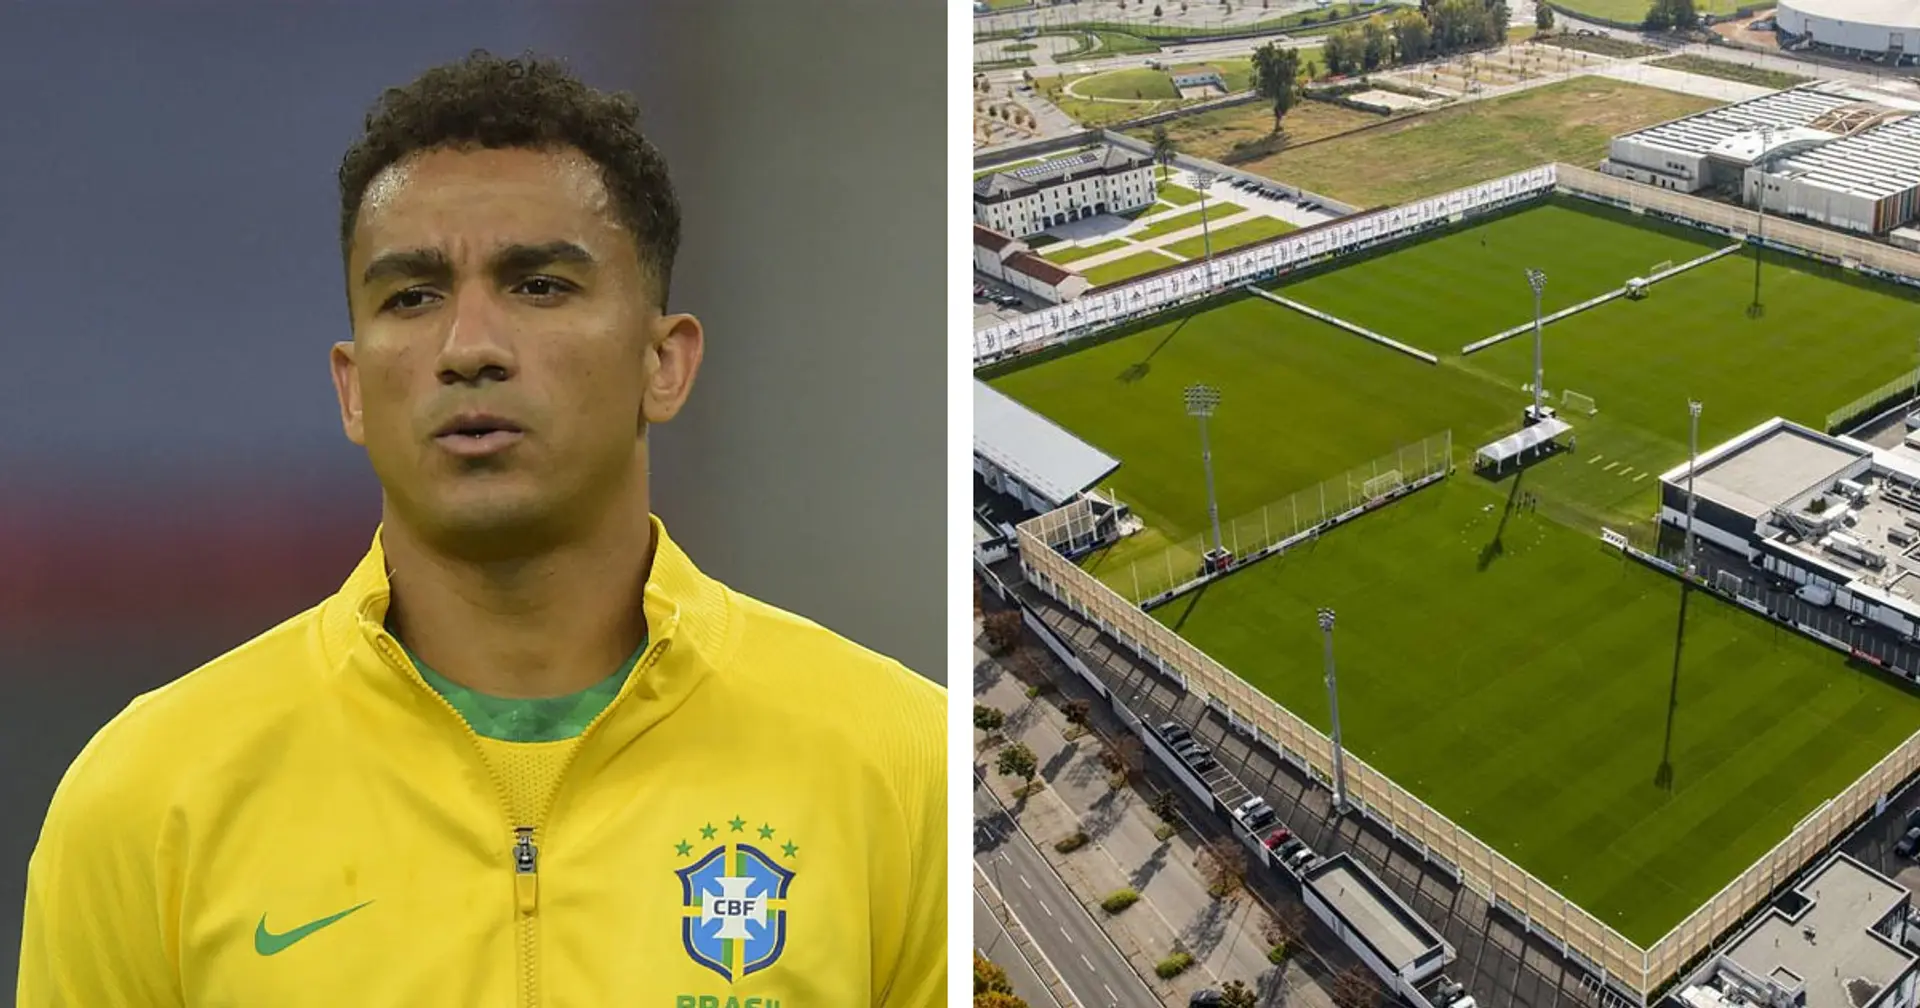 Danilo dal Brasile promette: "Juve e Nazionale, punto sempre al massimo", poi dà appuntamento alla Seleçao a Torino